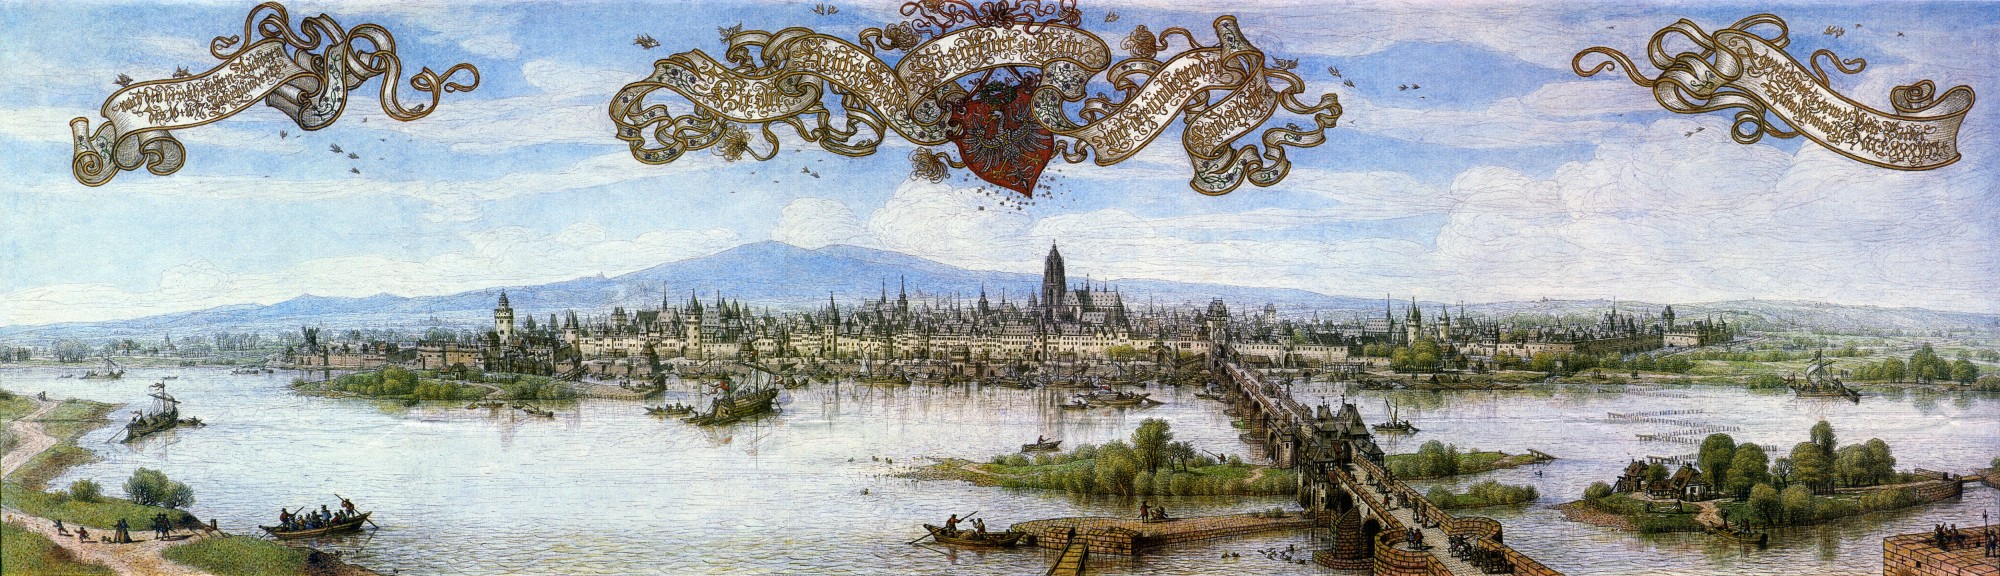 Frankfurt Am Main-Peter Becker-Frankfurt Am Main zu Anfang des 17 Jahrhunderts-1887